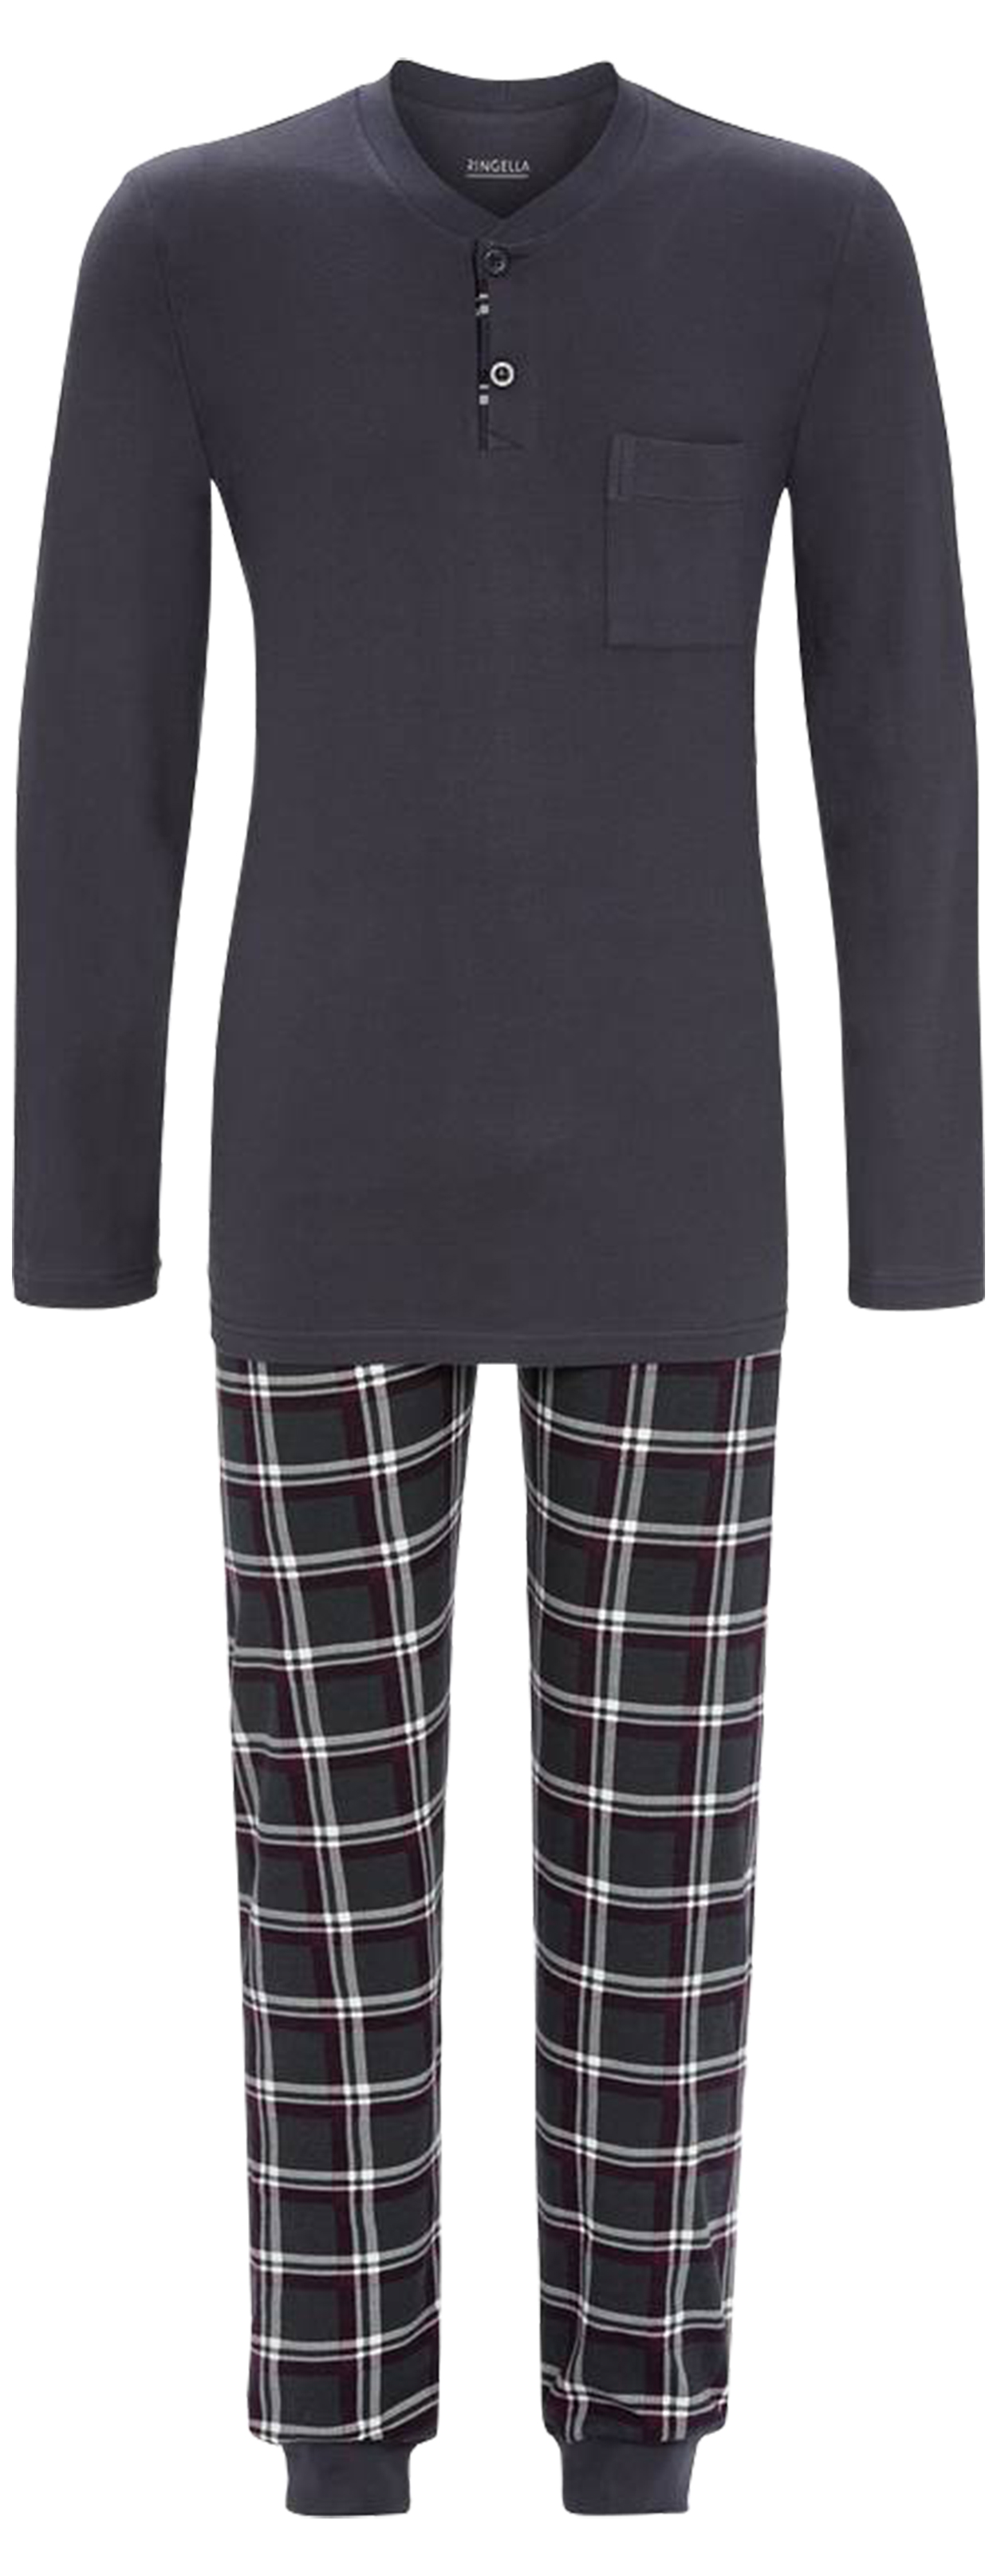 Pyjama long Ringella en coton : tee-shirt manches longues et col tunisien anthracite et pantalon à c